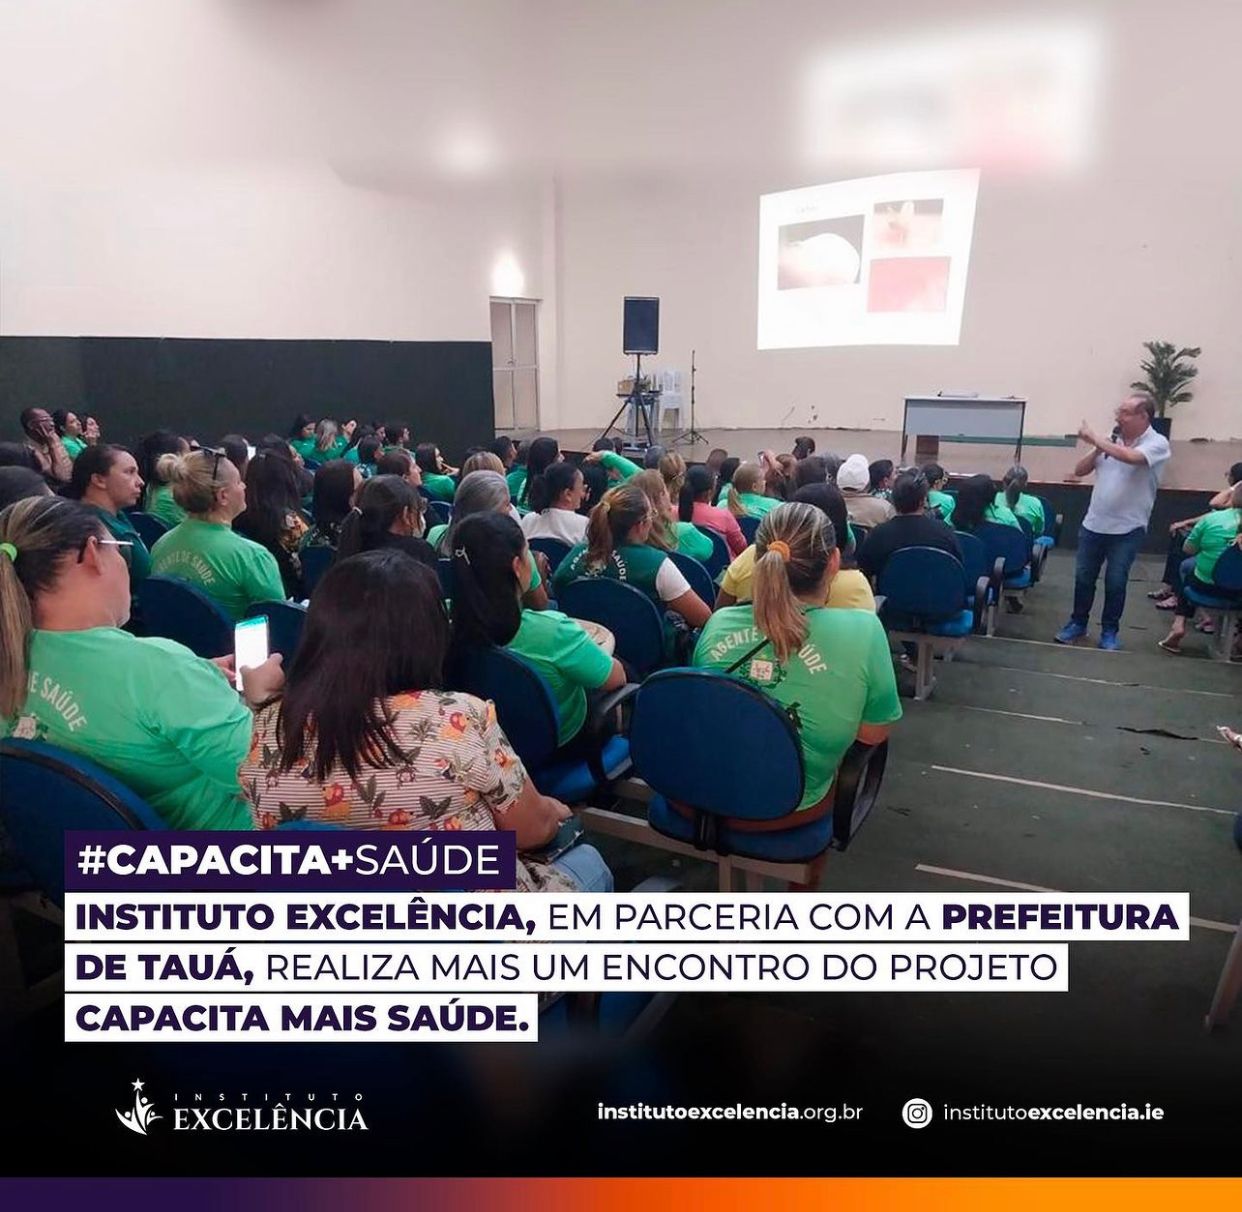 Instituto Excelência, em parceria com a prefeitura de Tauá, realiza mais um encontro do projeto Capacita Mais Saúde.